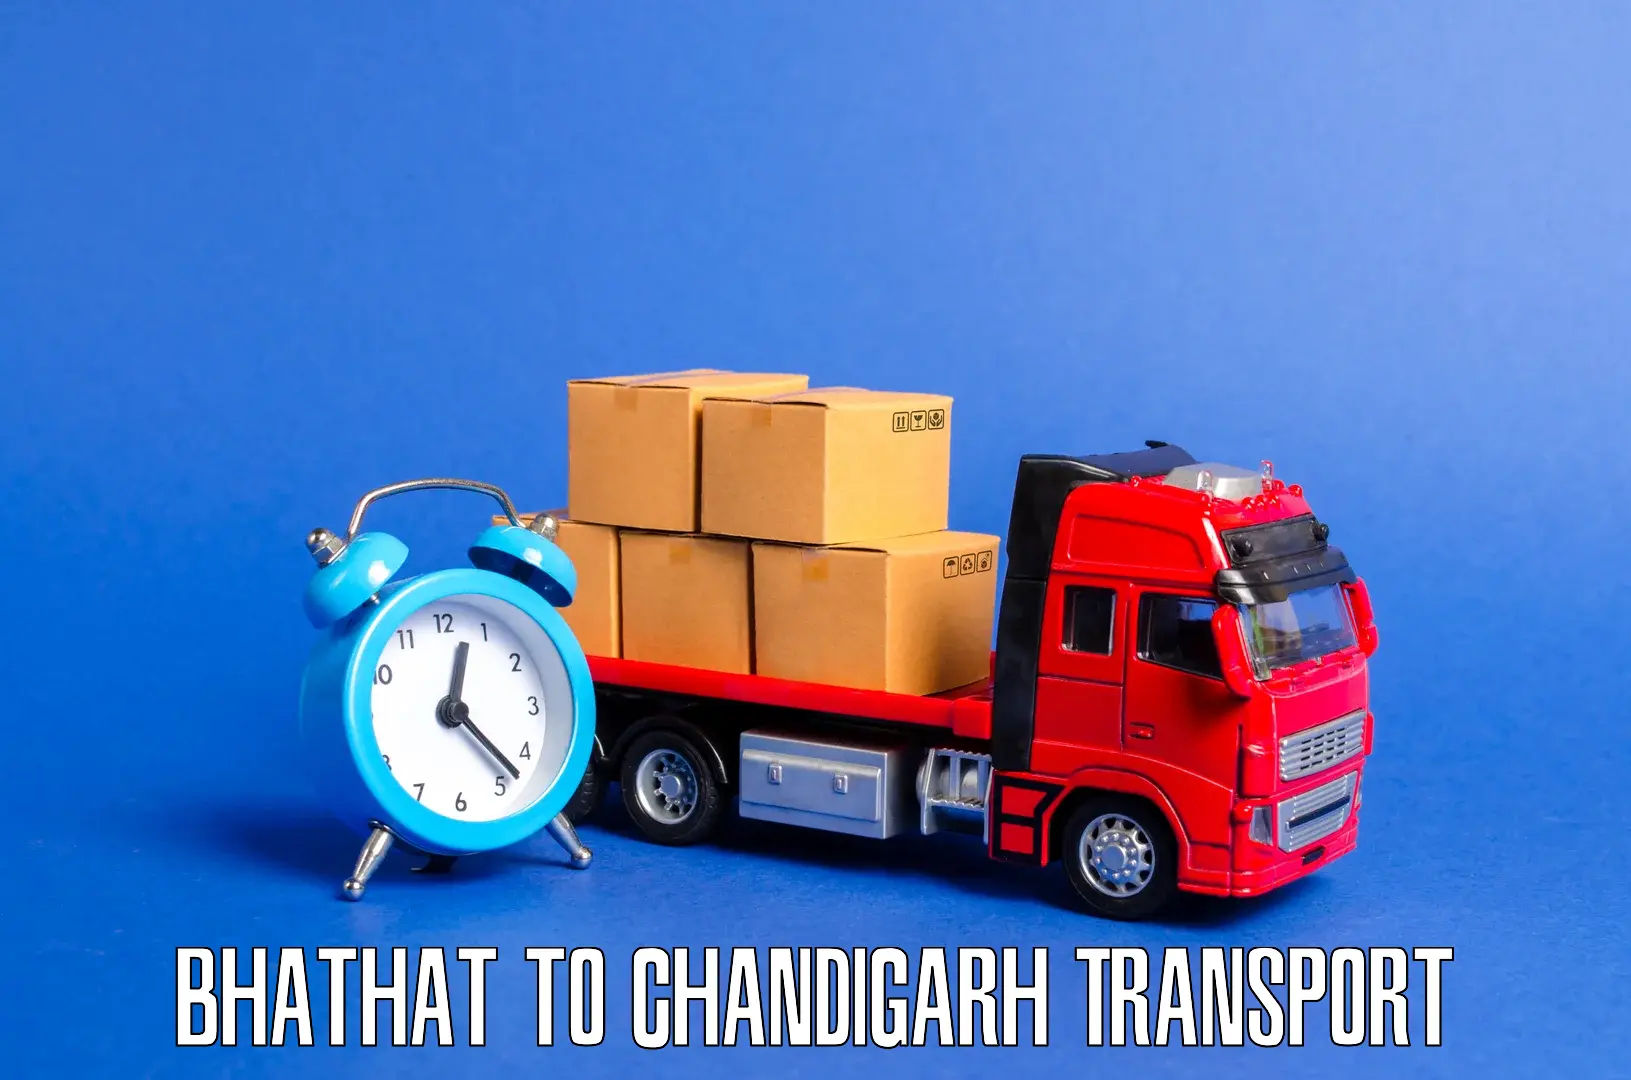 Bike transport service Bhathat to Chandigarh